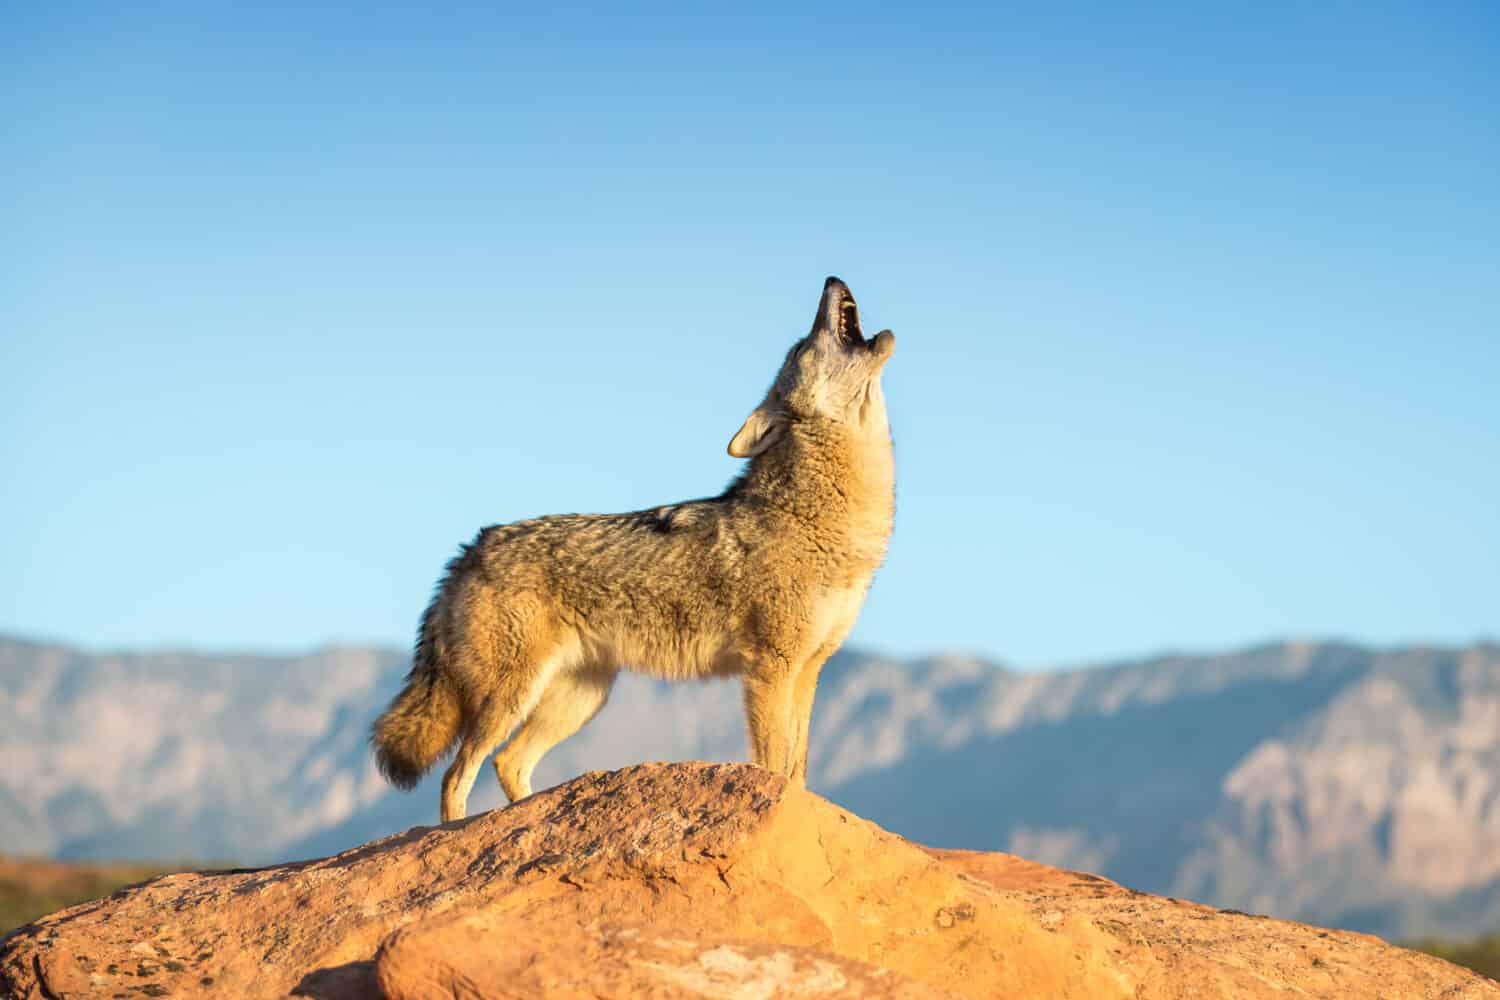 coyote in piedi su una formazione rocciosa che ulula con deserto, montagne e cielo azzurro sullo sfondo